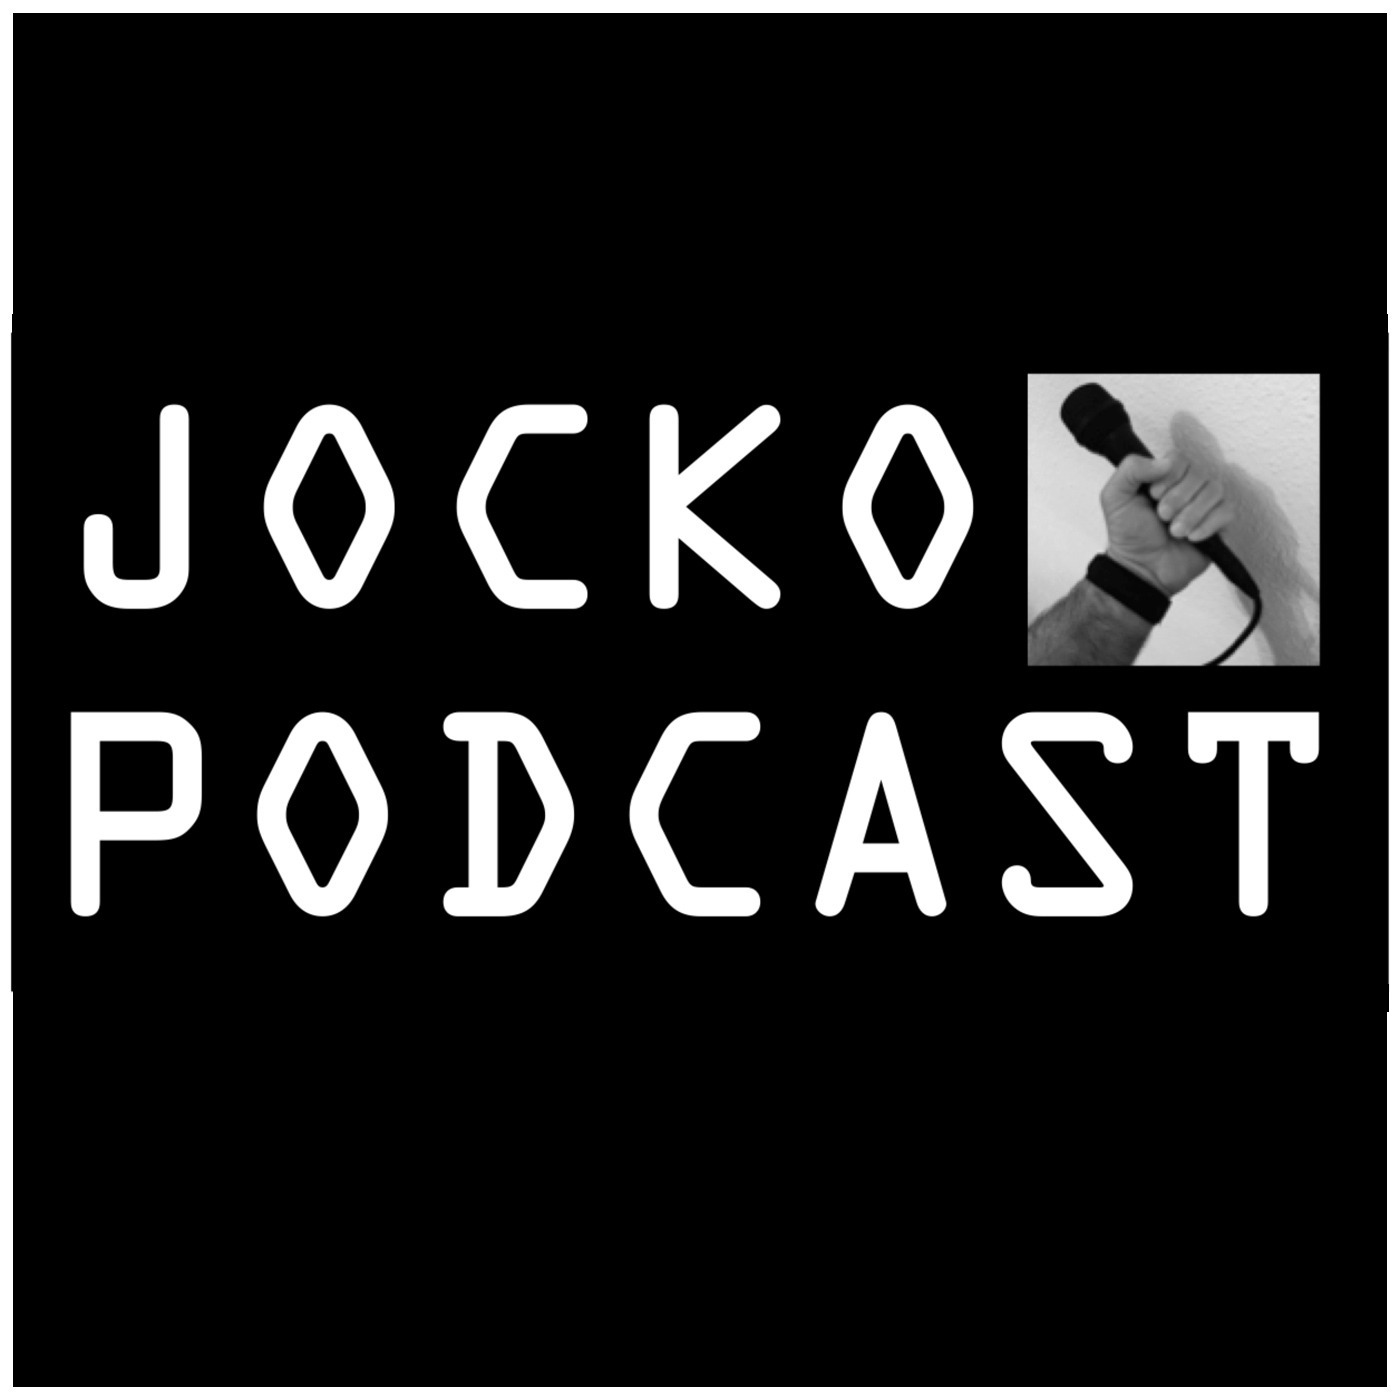 Jocko Podcast podcast